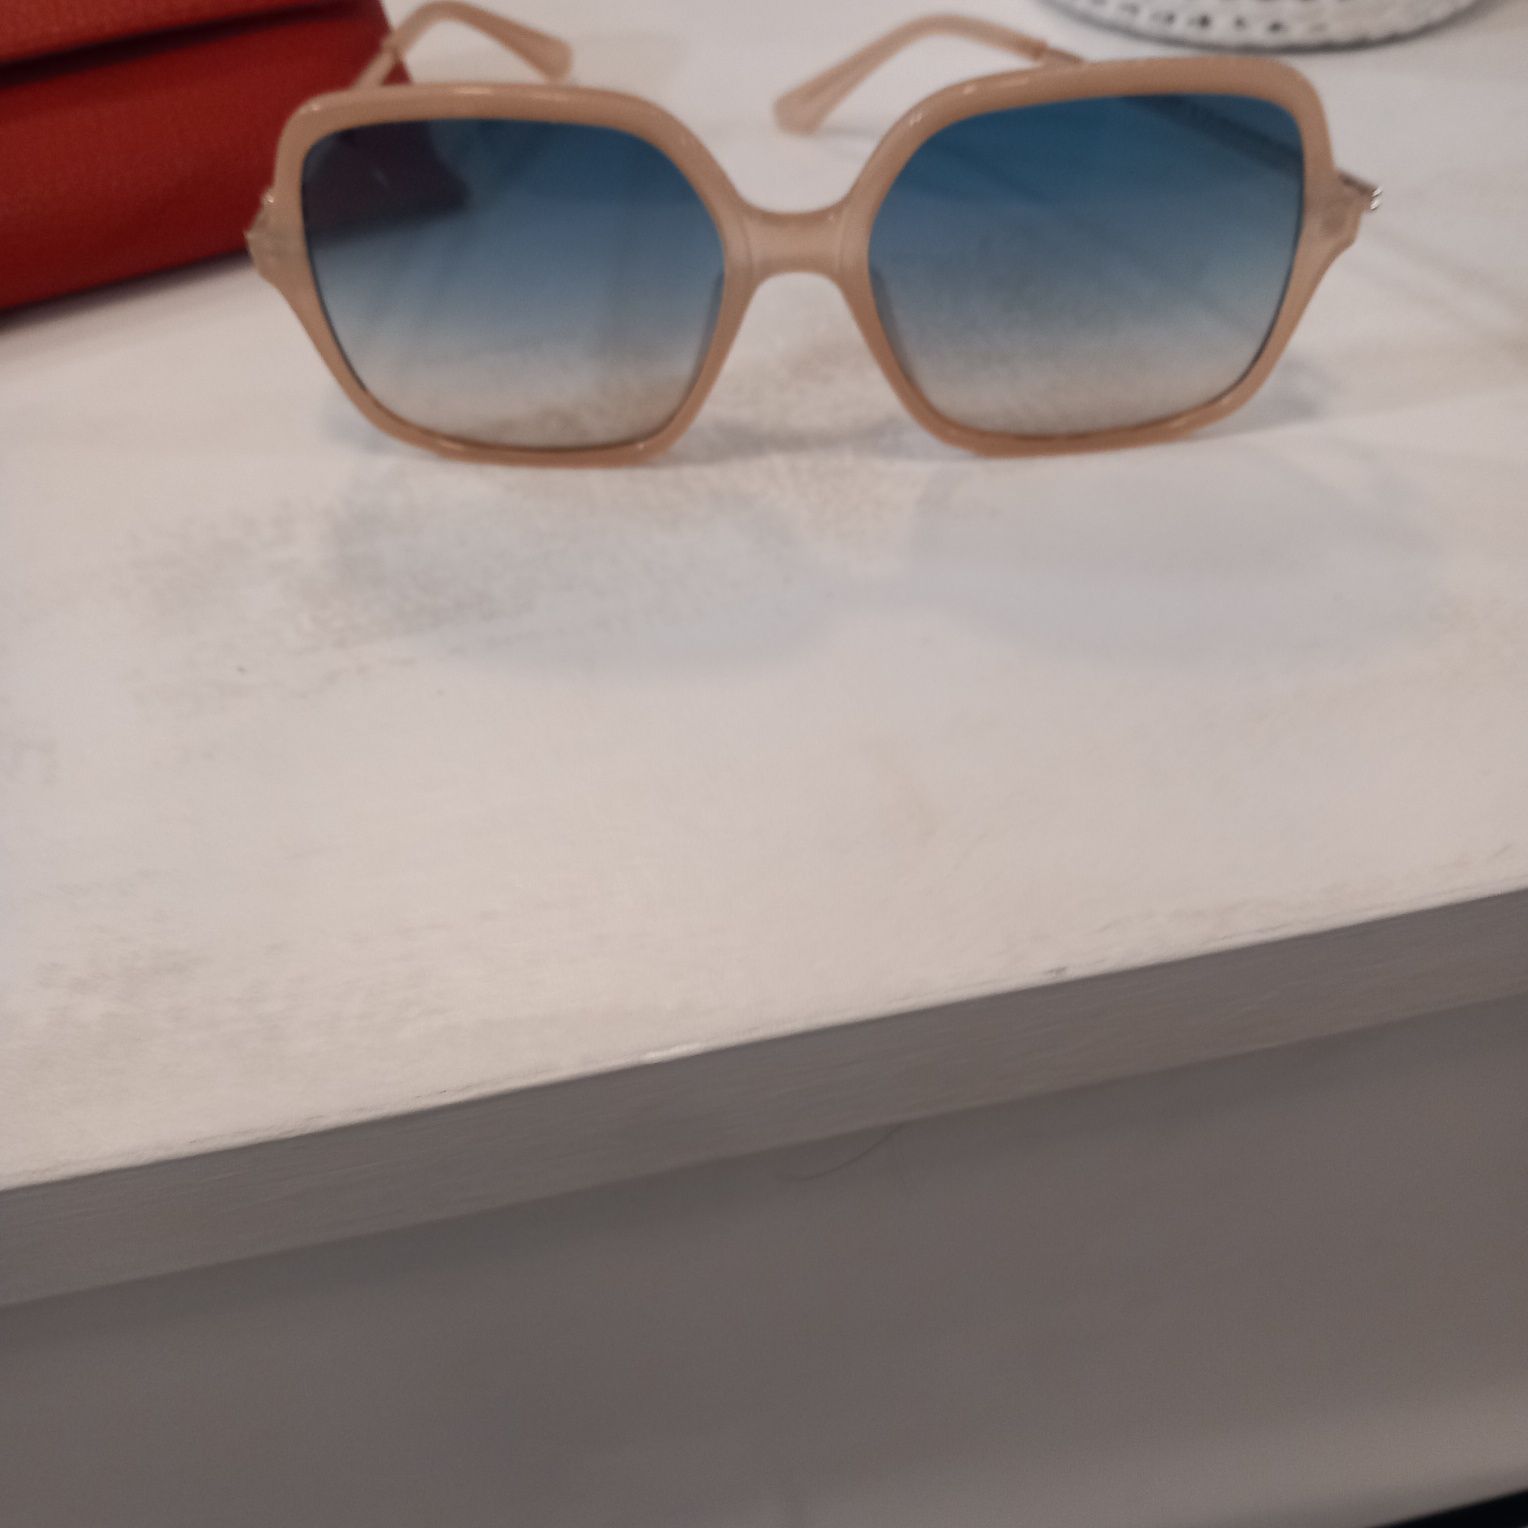 Óculos de sol Guess, originais, em bom estado.